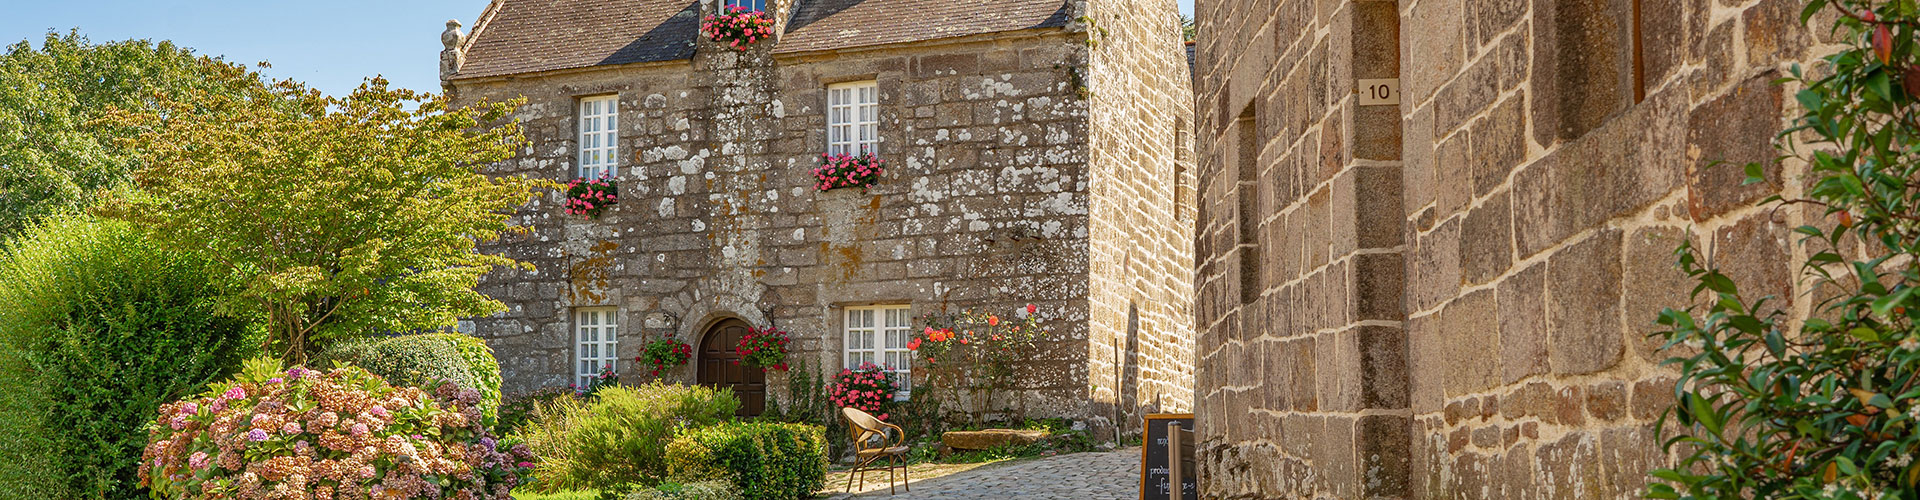 Village médiéval d'Auvergne aux ruelles pittoresques, 